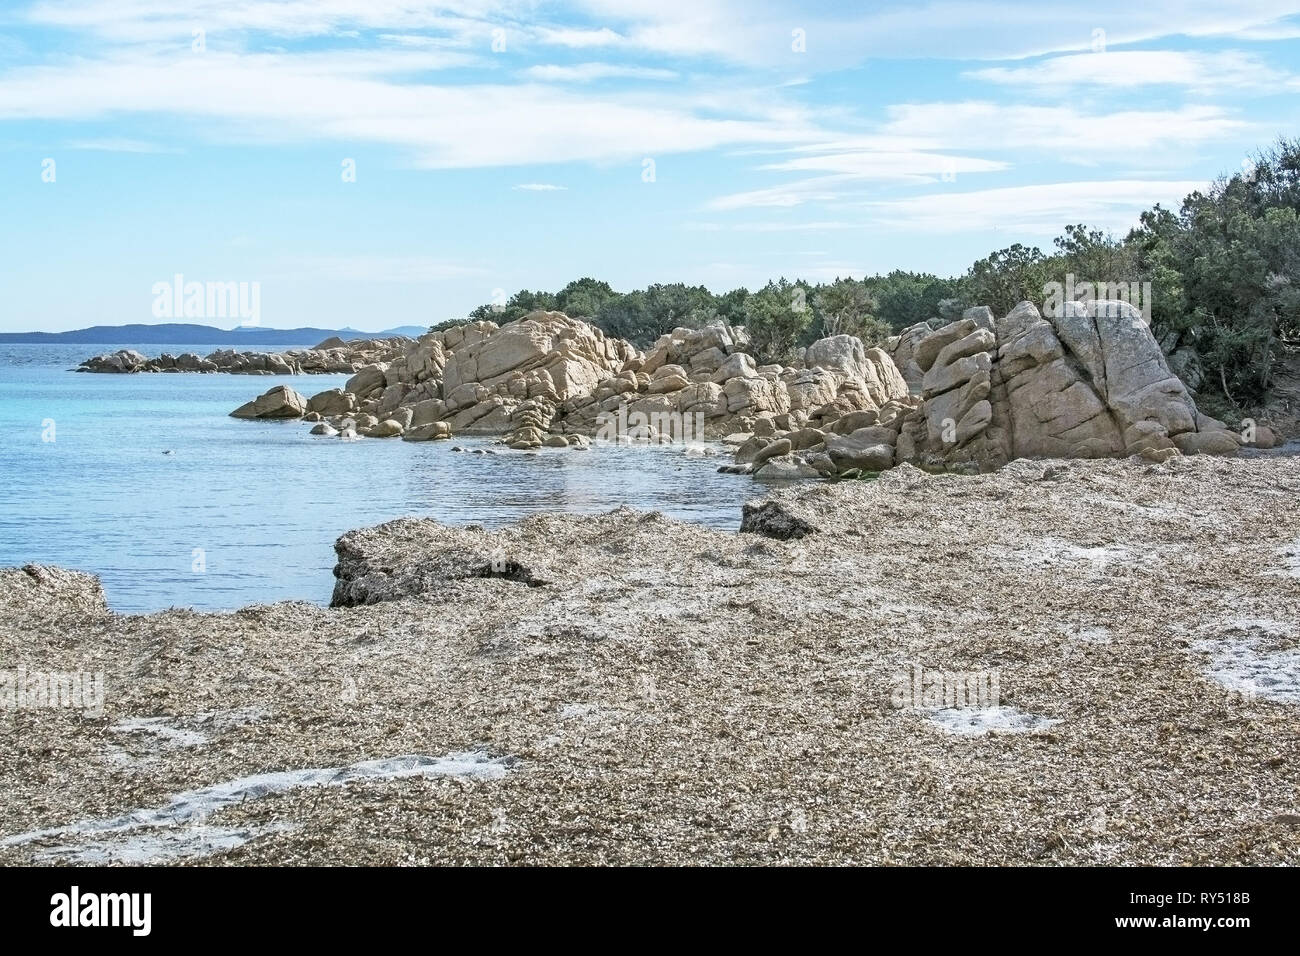 Acqua verde e piante fanerogame a secco su una spiaggia invernale in Costa Smeralda, Sardegna, Italia nel mese di marzo. Foto Stock